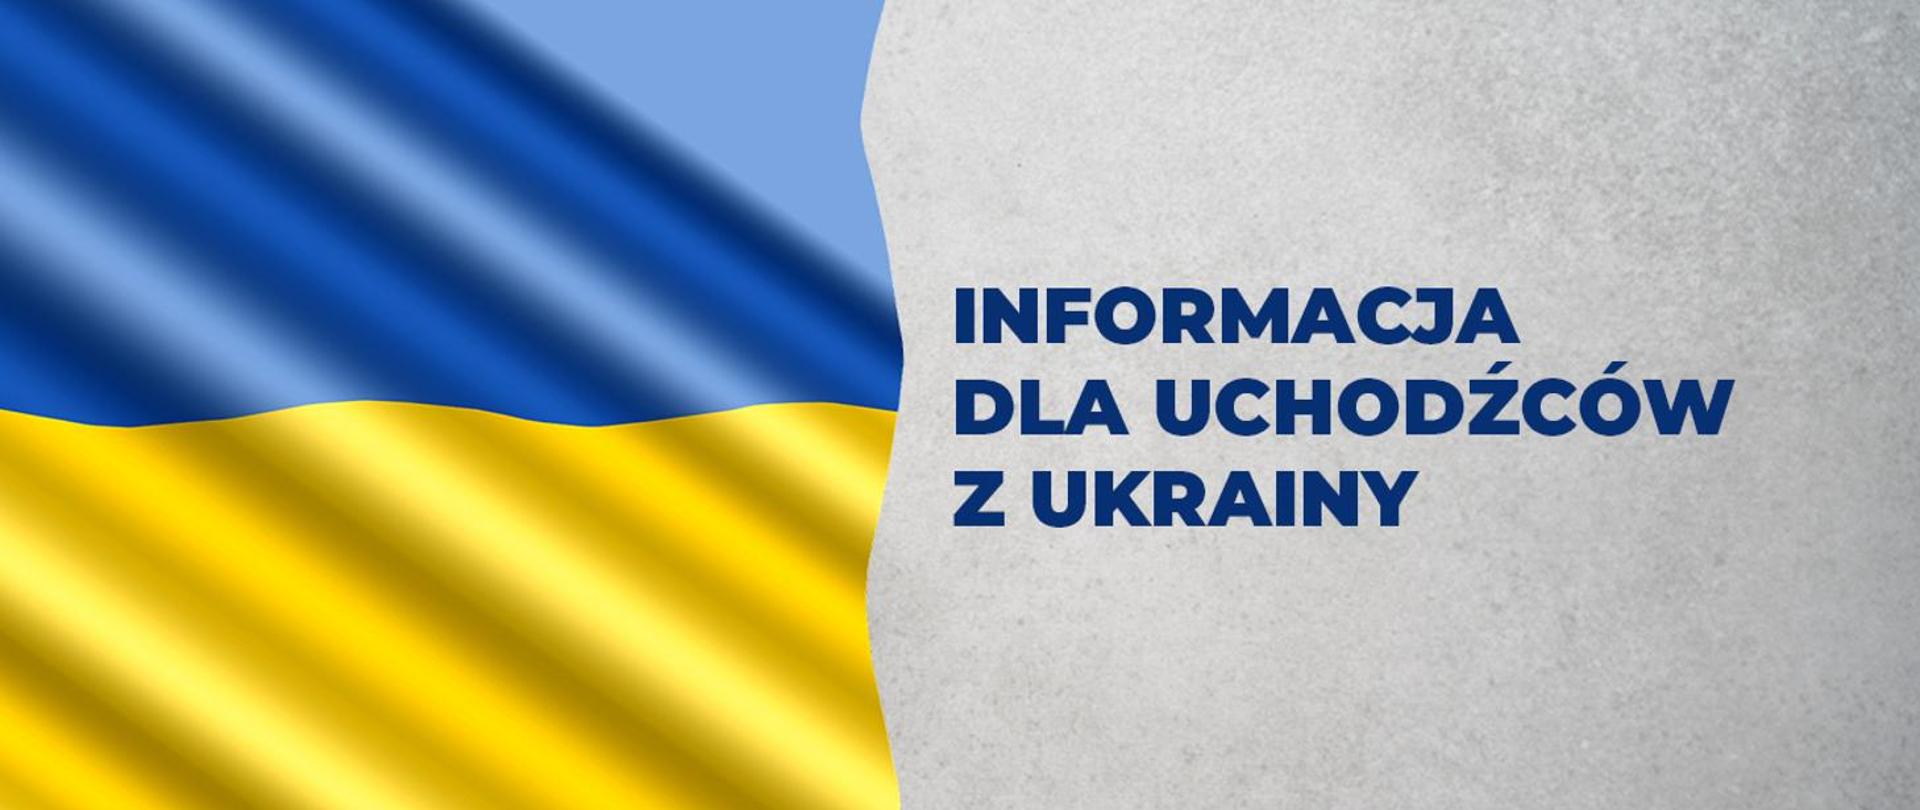 Informacja w sprawie pobytu w Polsce osób uciekających z Ukrainy